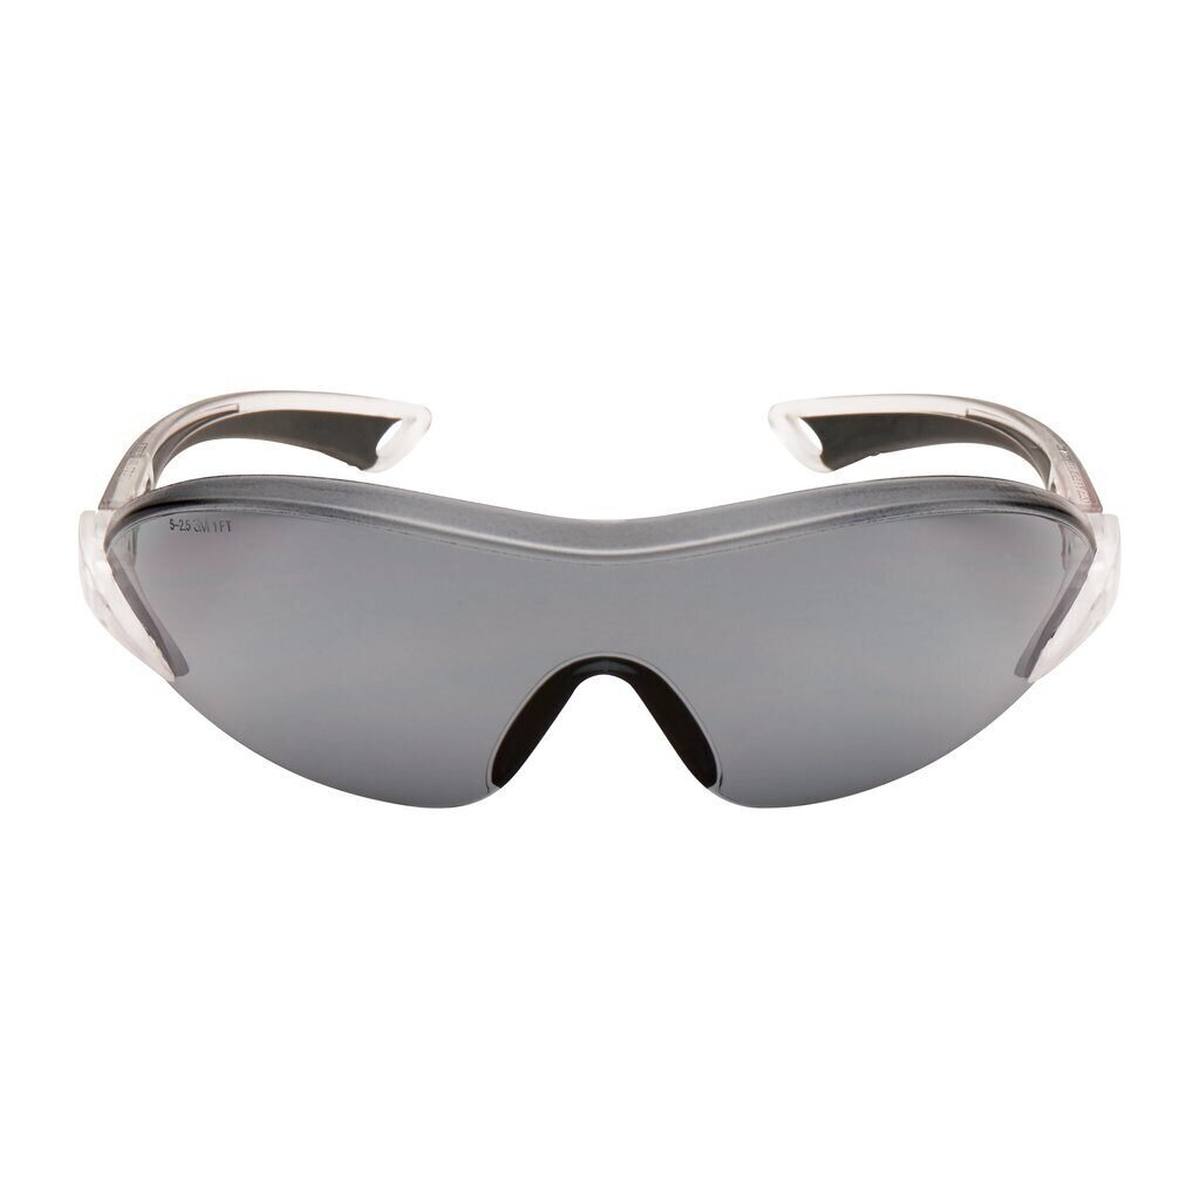 3M 2841 Schutzbrille AS/AF/UV, PC, grau getönt, einstellbare Bügellänge und -neigung, softe Bügelenden